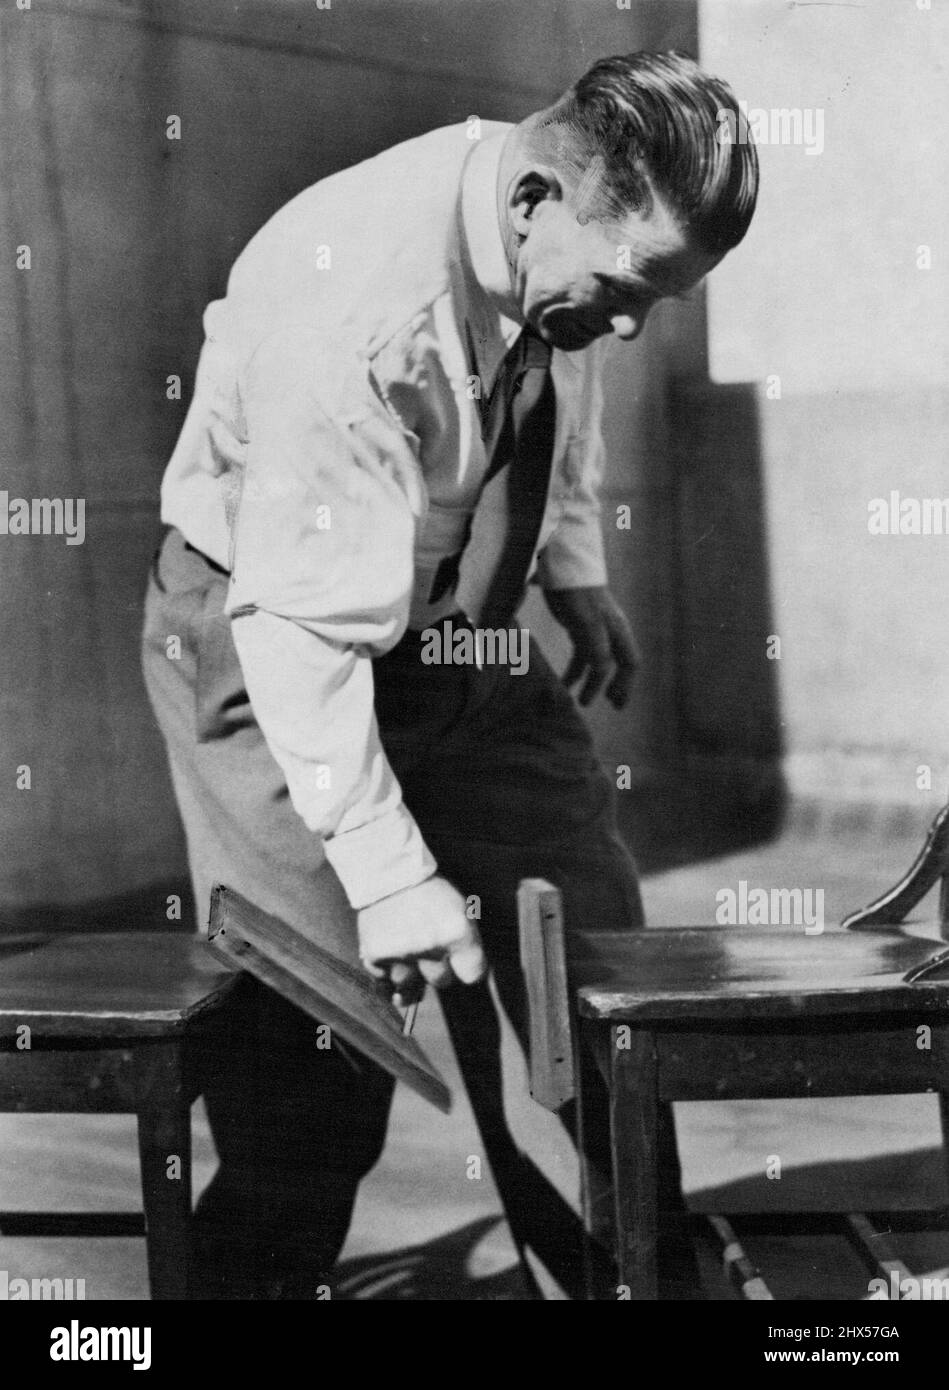 Don Athaldo - Australian Strongman. August 17, 1949. Stock Photo